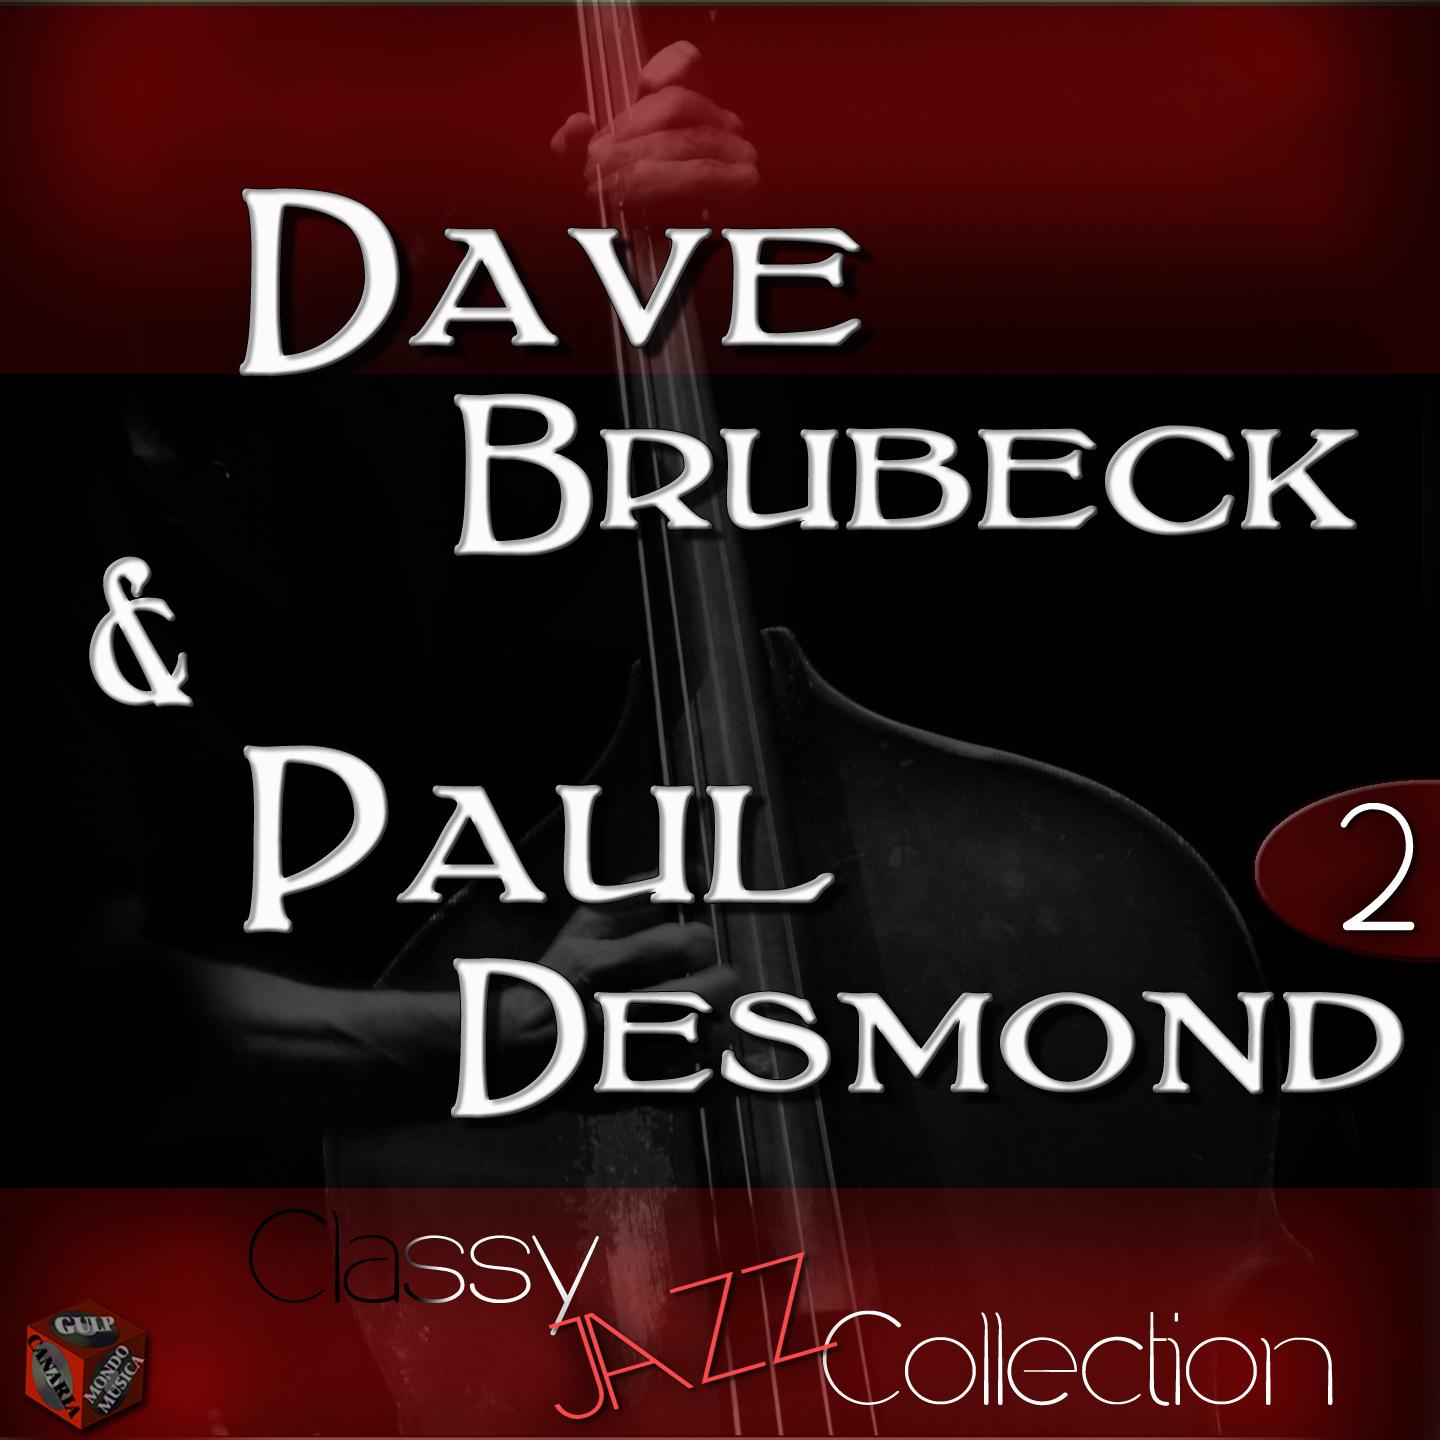 Jazz Collection: Dave Brubeck & Paul Desmond, Vol. 2